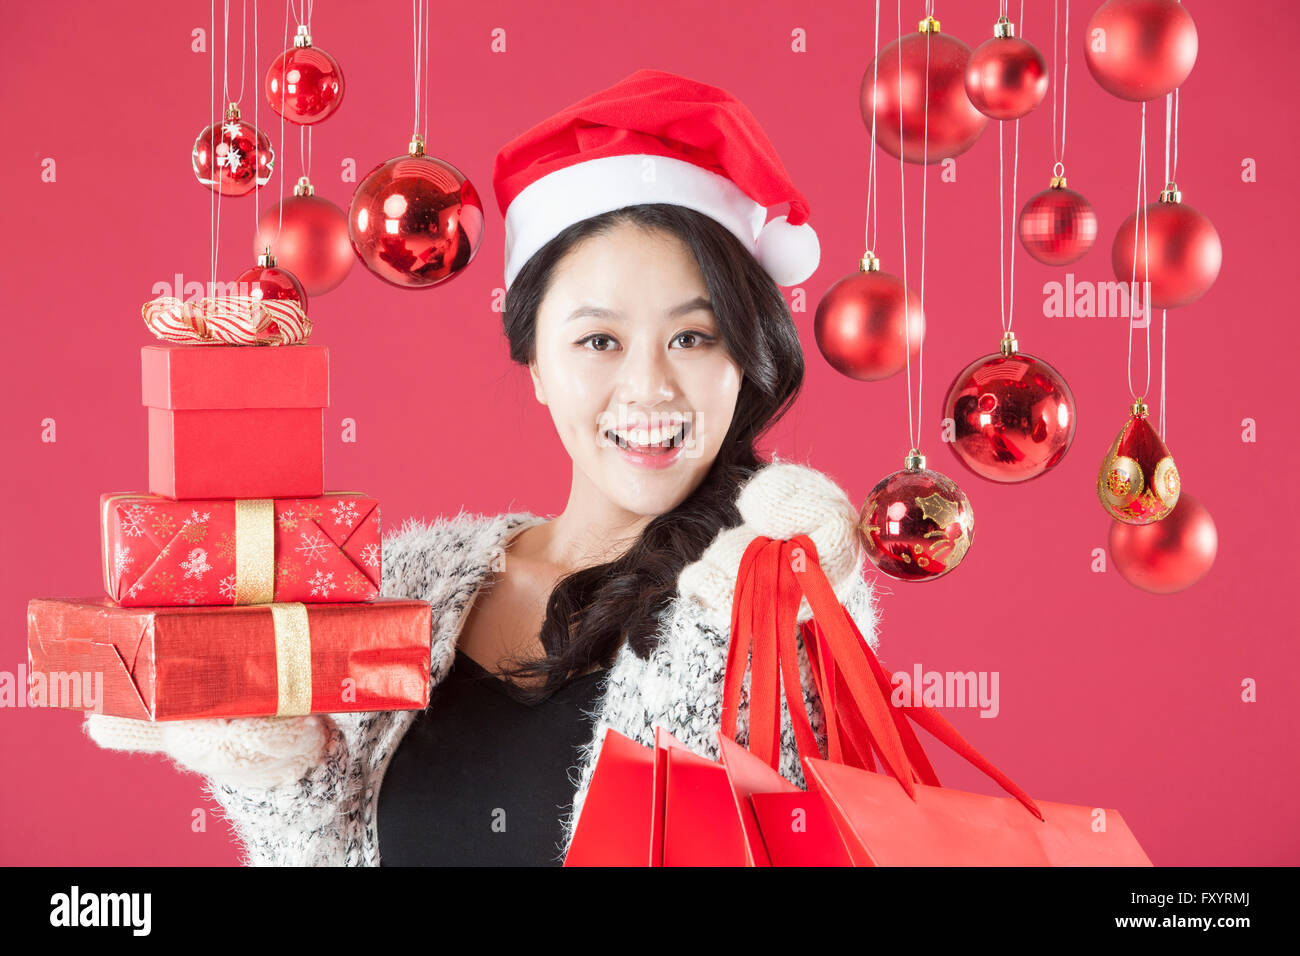 Portrait of young smiling woman wearing santa hat holding présent empilé des boîtes et sacs de magasinage à regarder devant avec des boules de Noël Banque D'Images